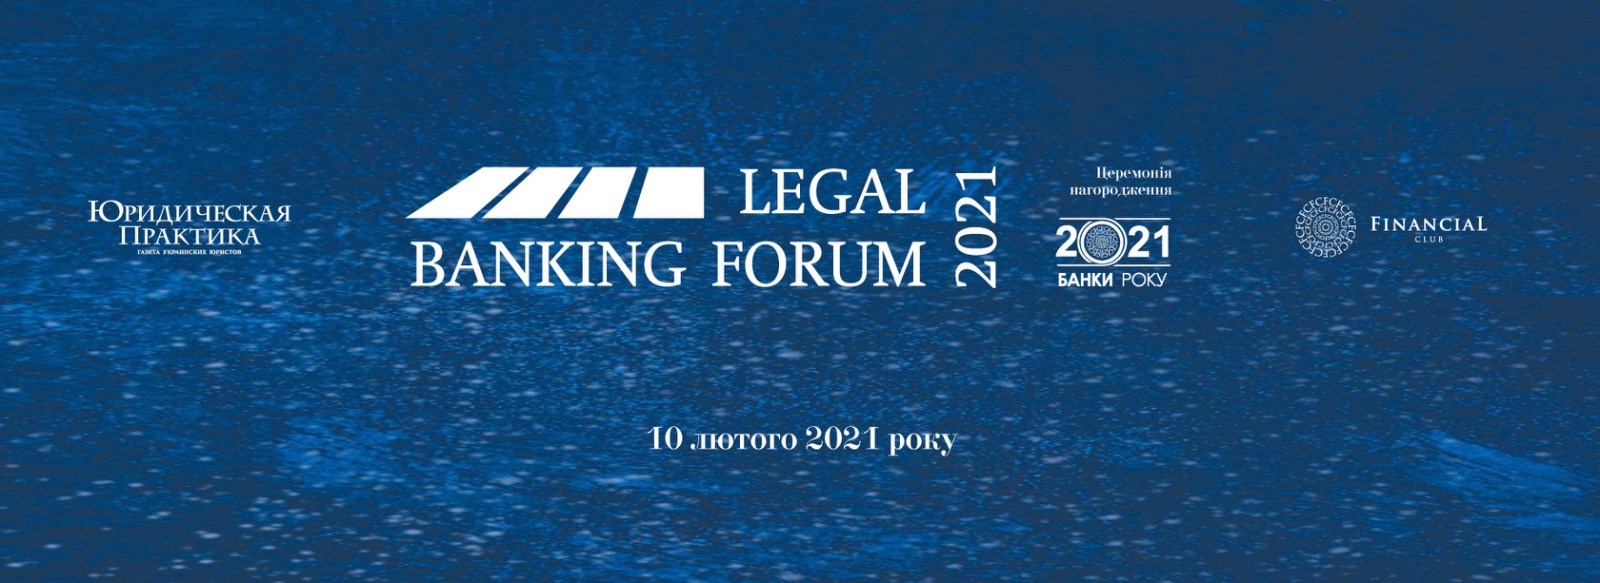 VII Legal Banking Forum і Церемонії нагородження 